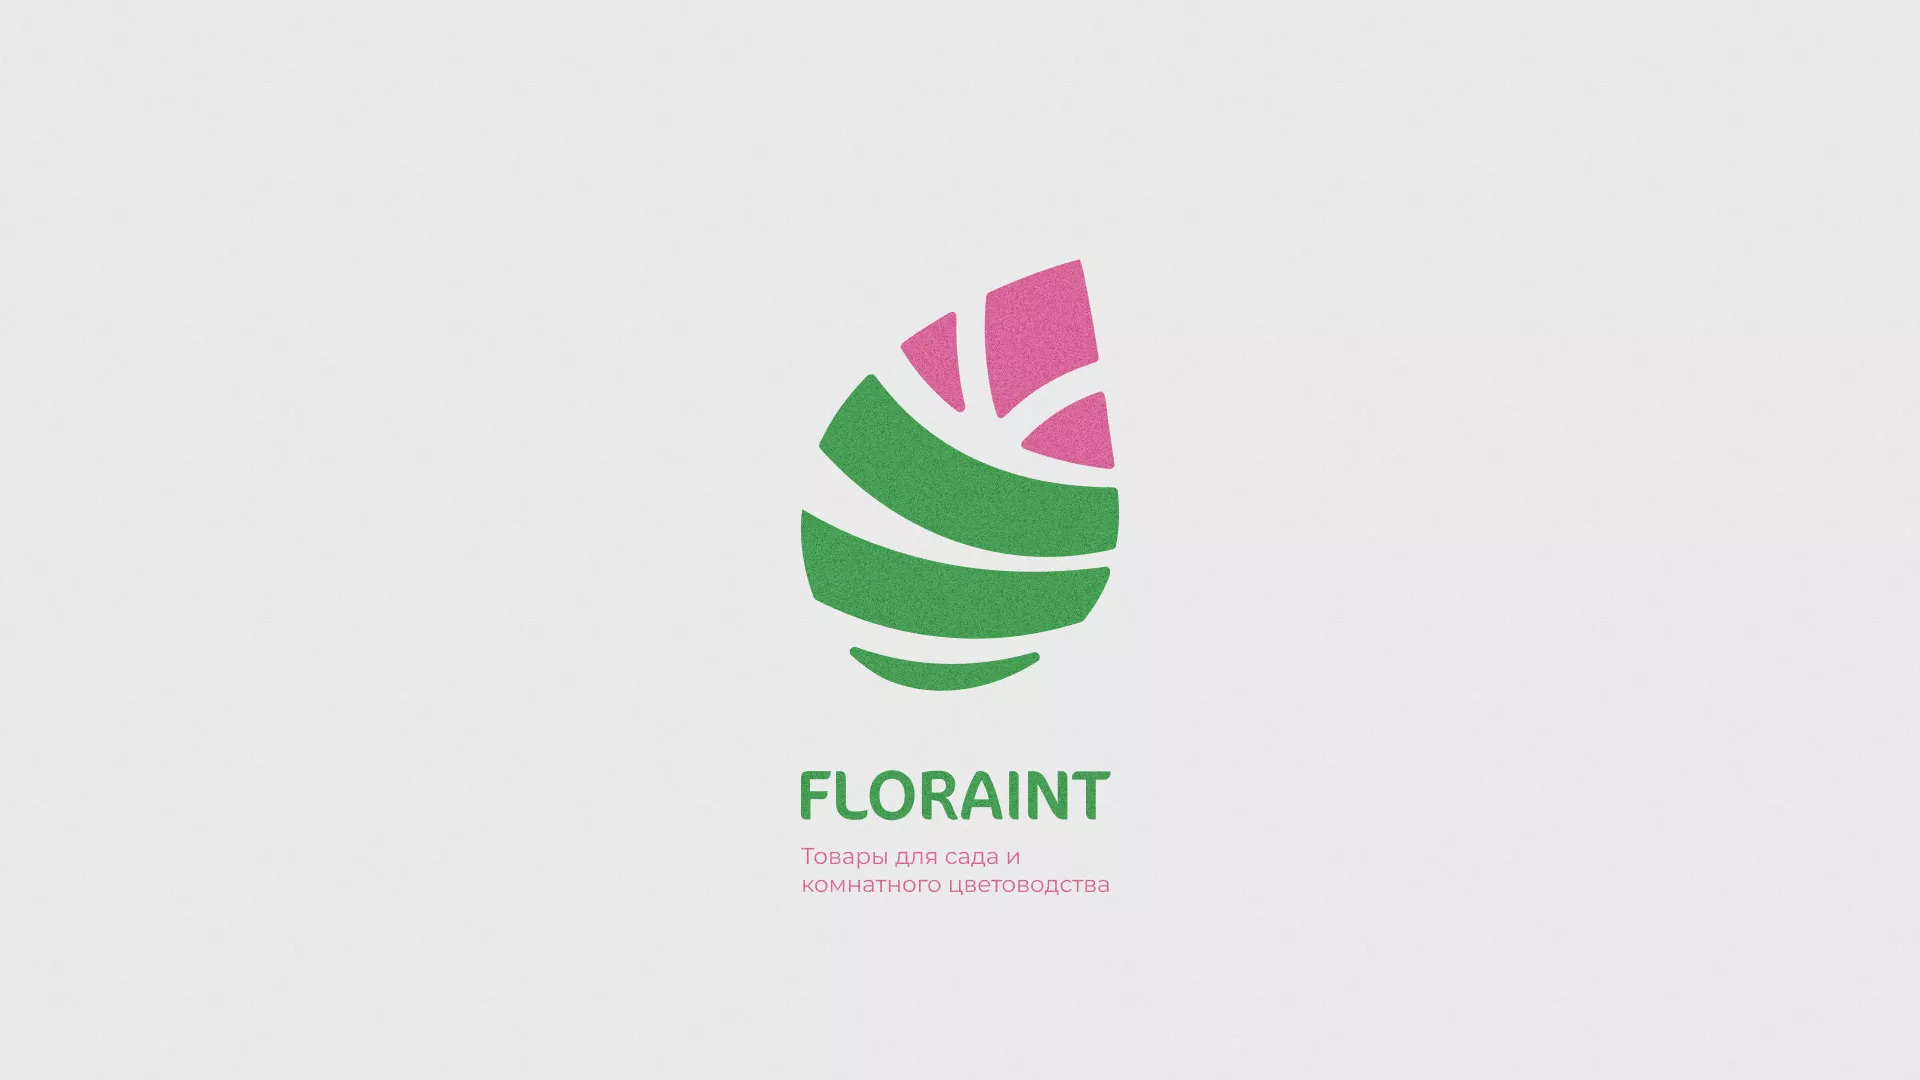 Разработка оформления профиля Instagram для магазина «Floraint» в Грязовце